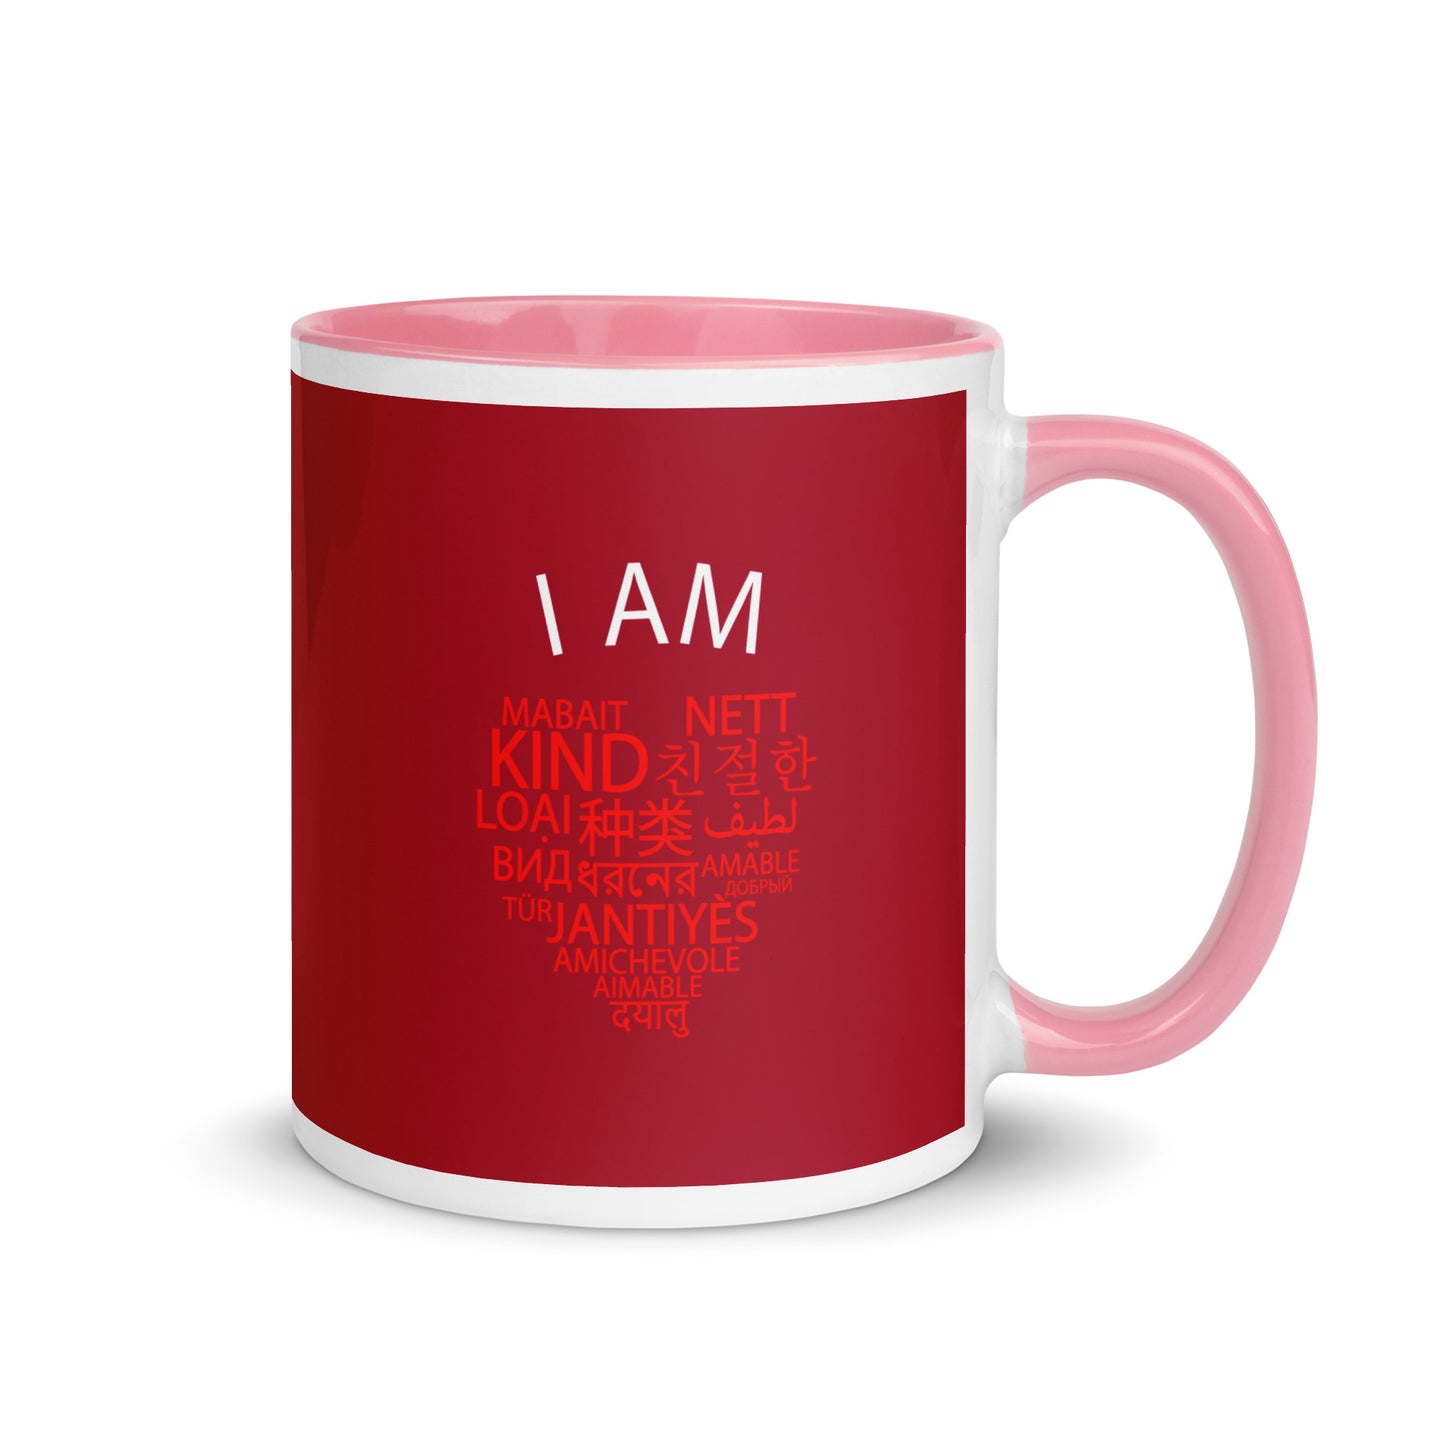 I Am Kind (Heart) Mug with Color Inside.